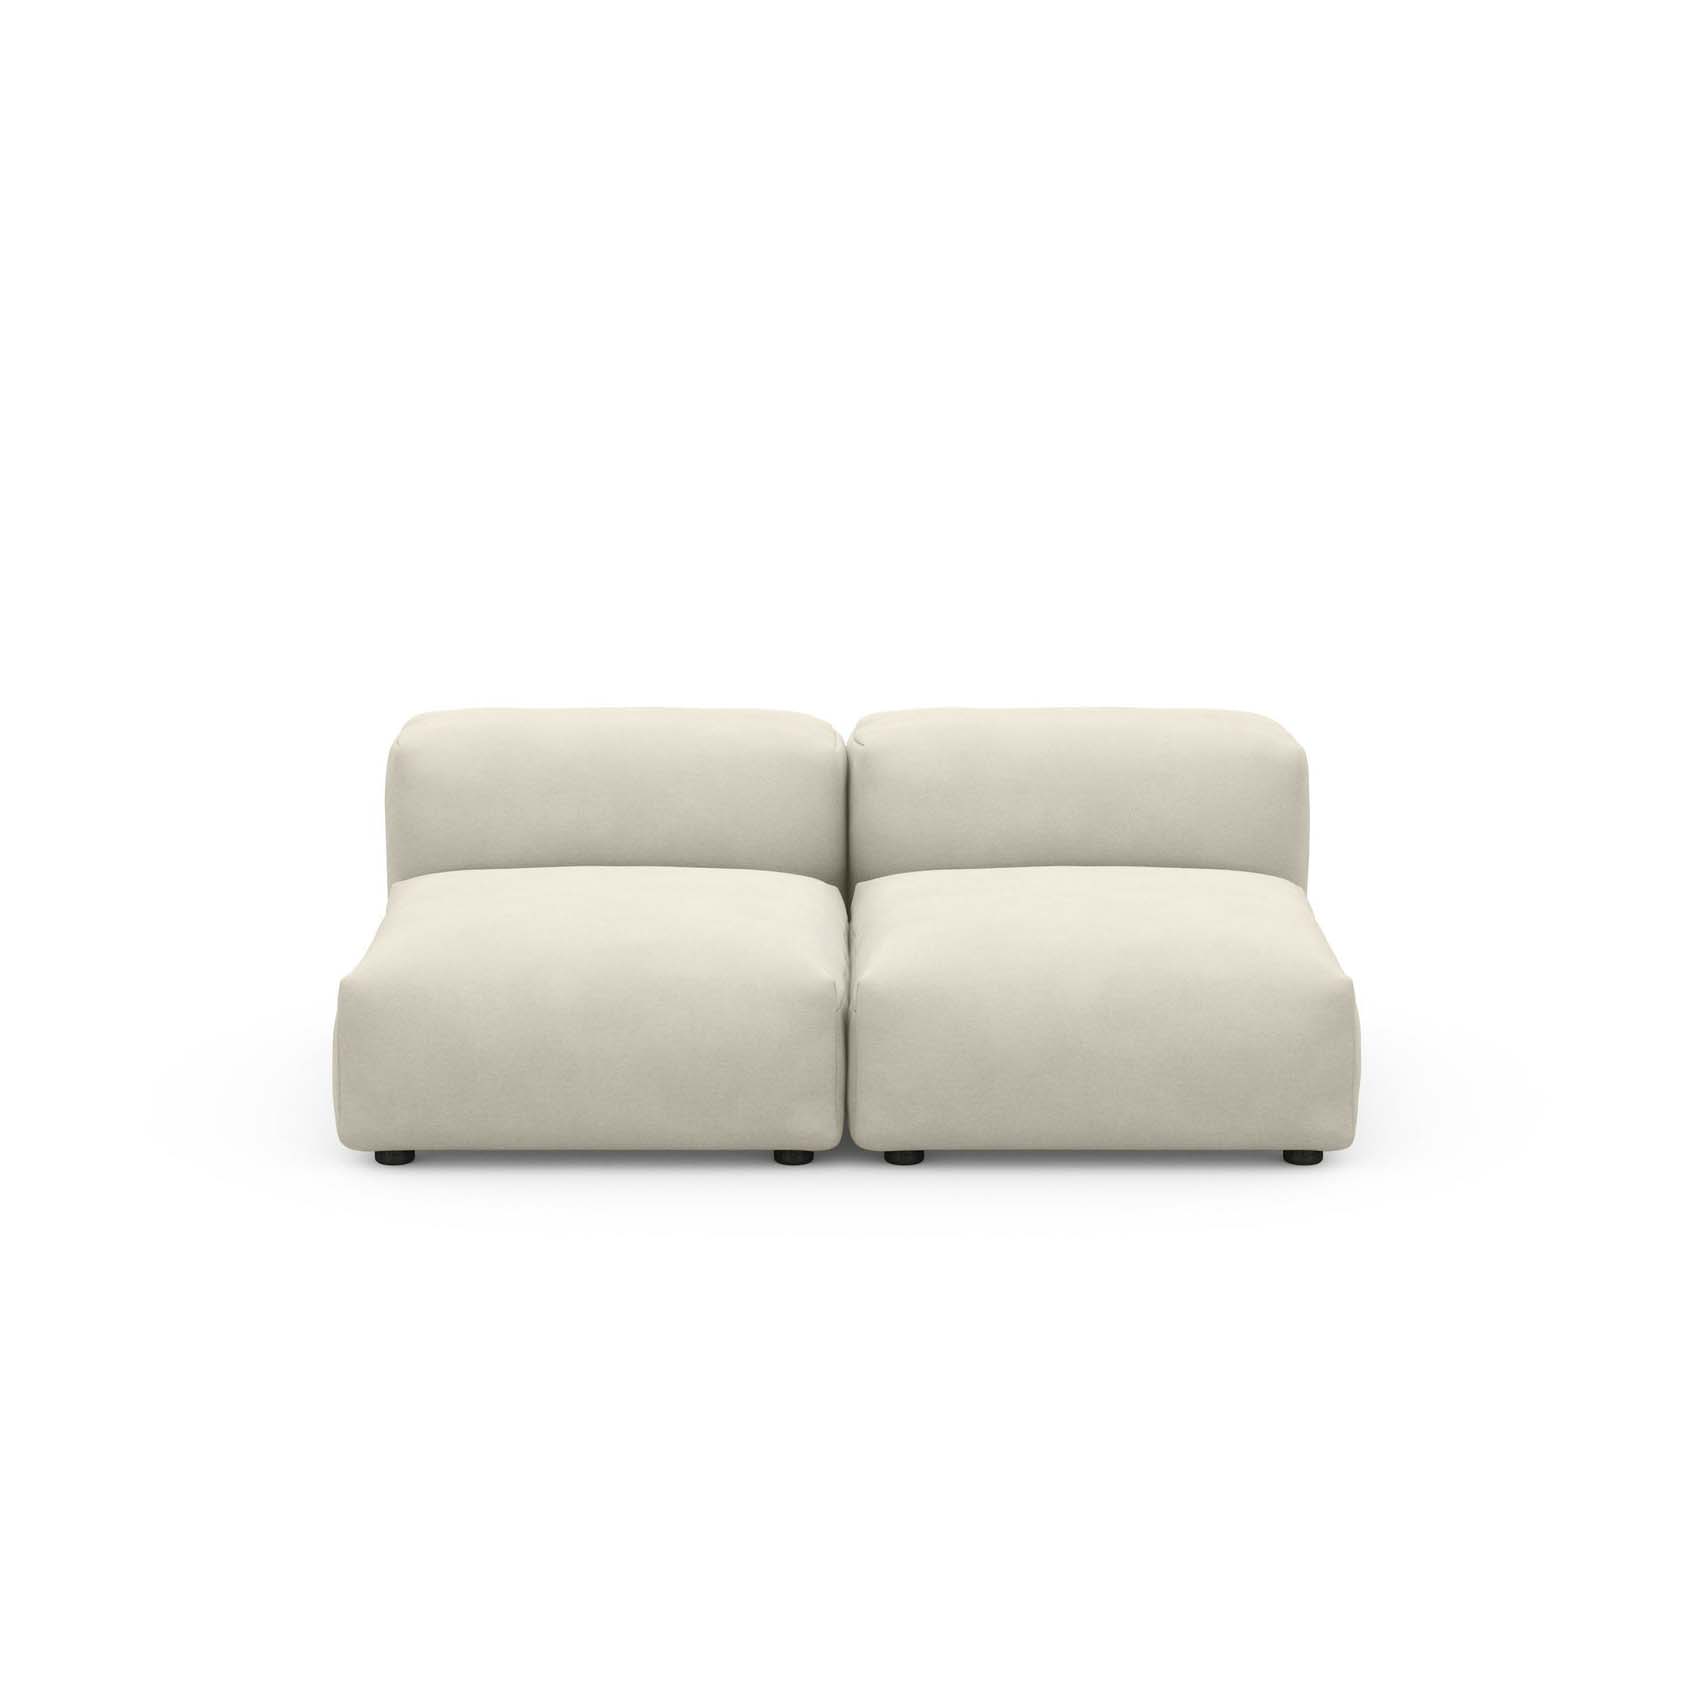 Two Seat Lounge Sofa S Herringbone Beige